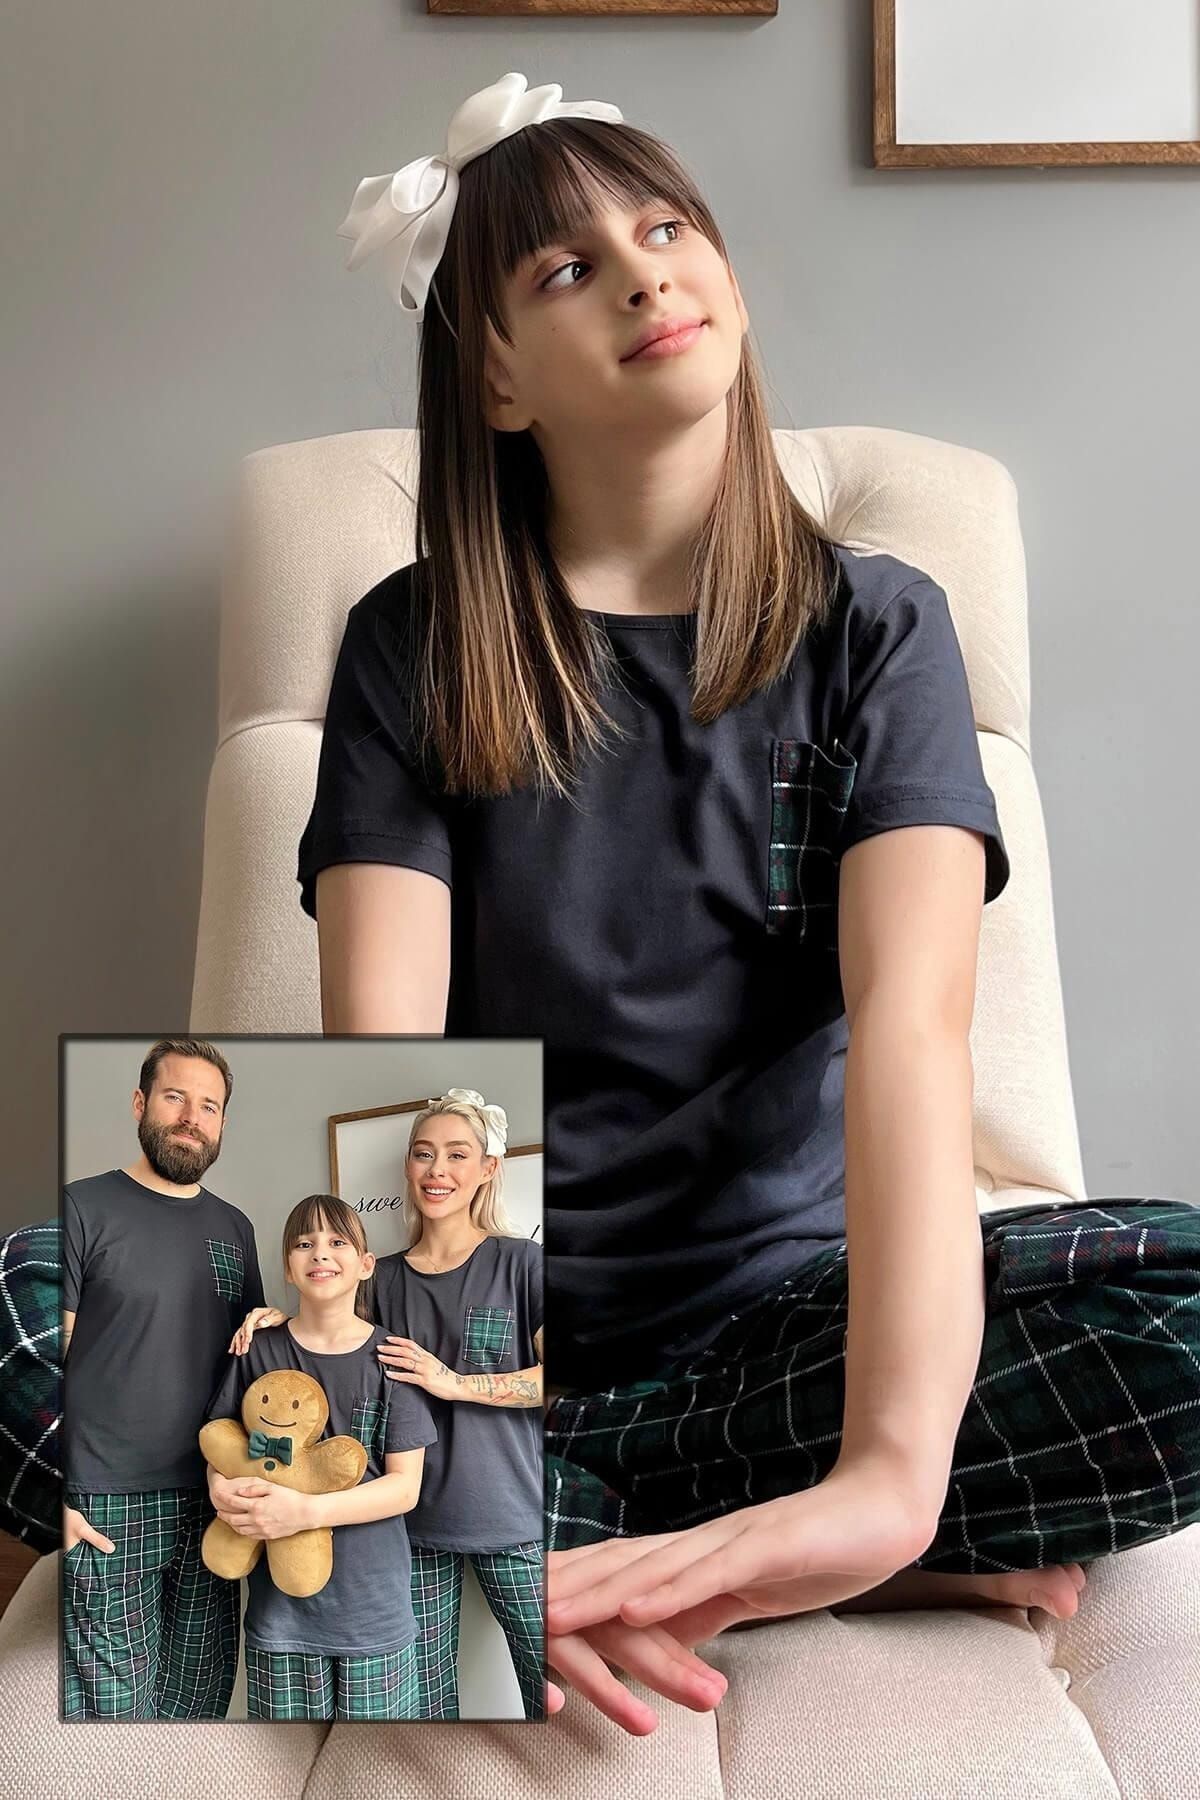 Pijamaevi Lacivert Cep Kısa Kol Anne Kız Aile Pijaması - Çocuk Takımı